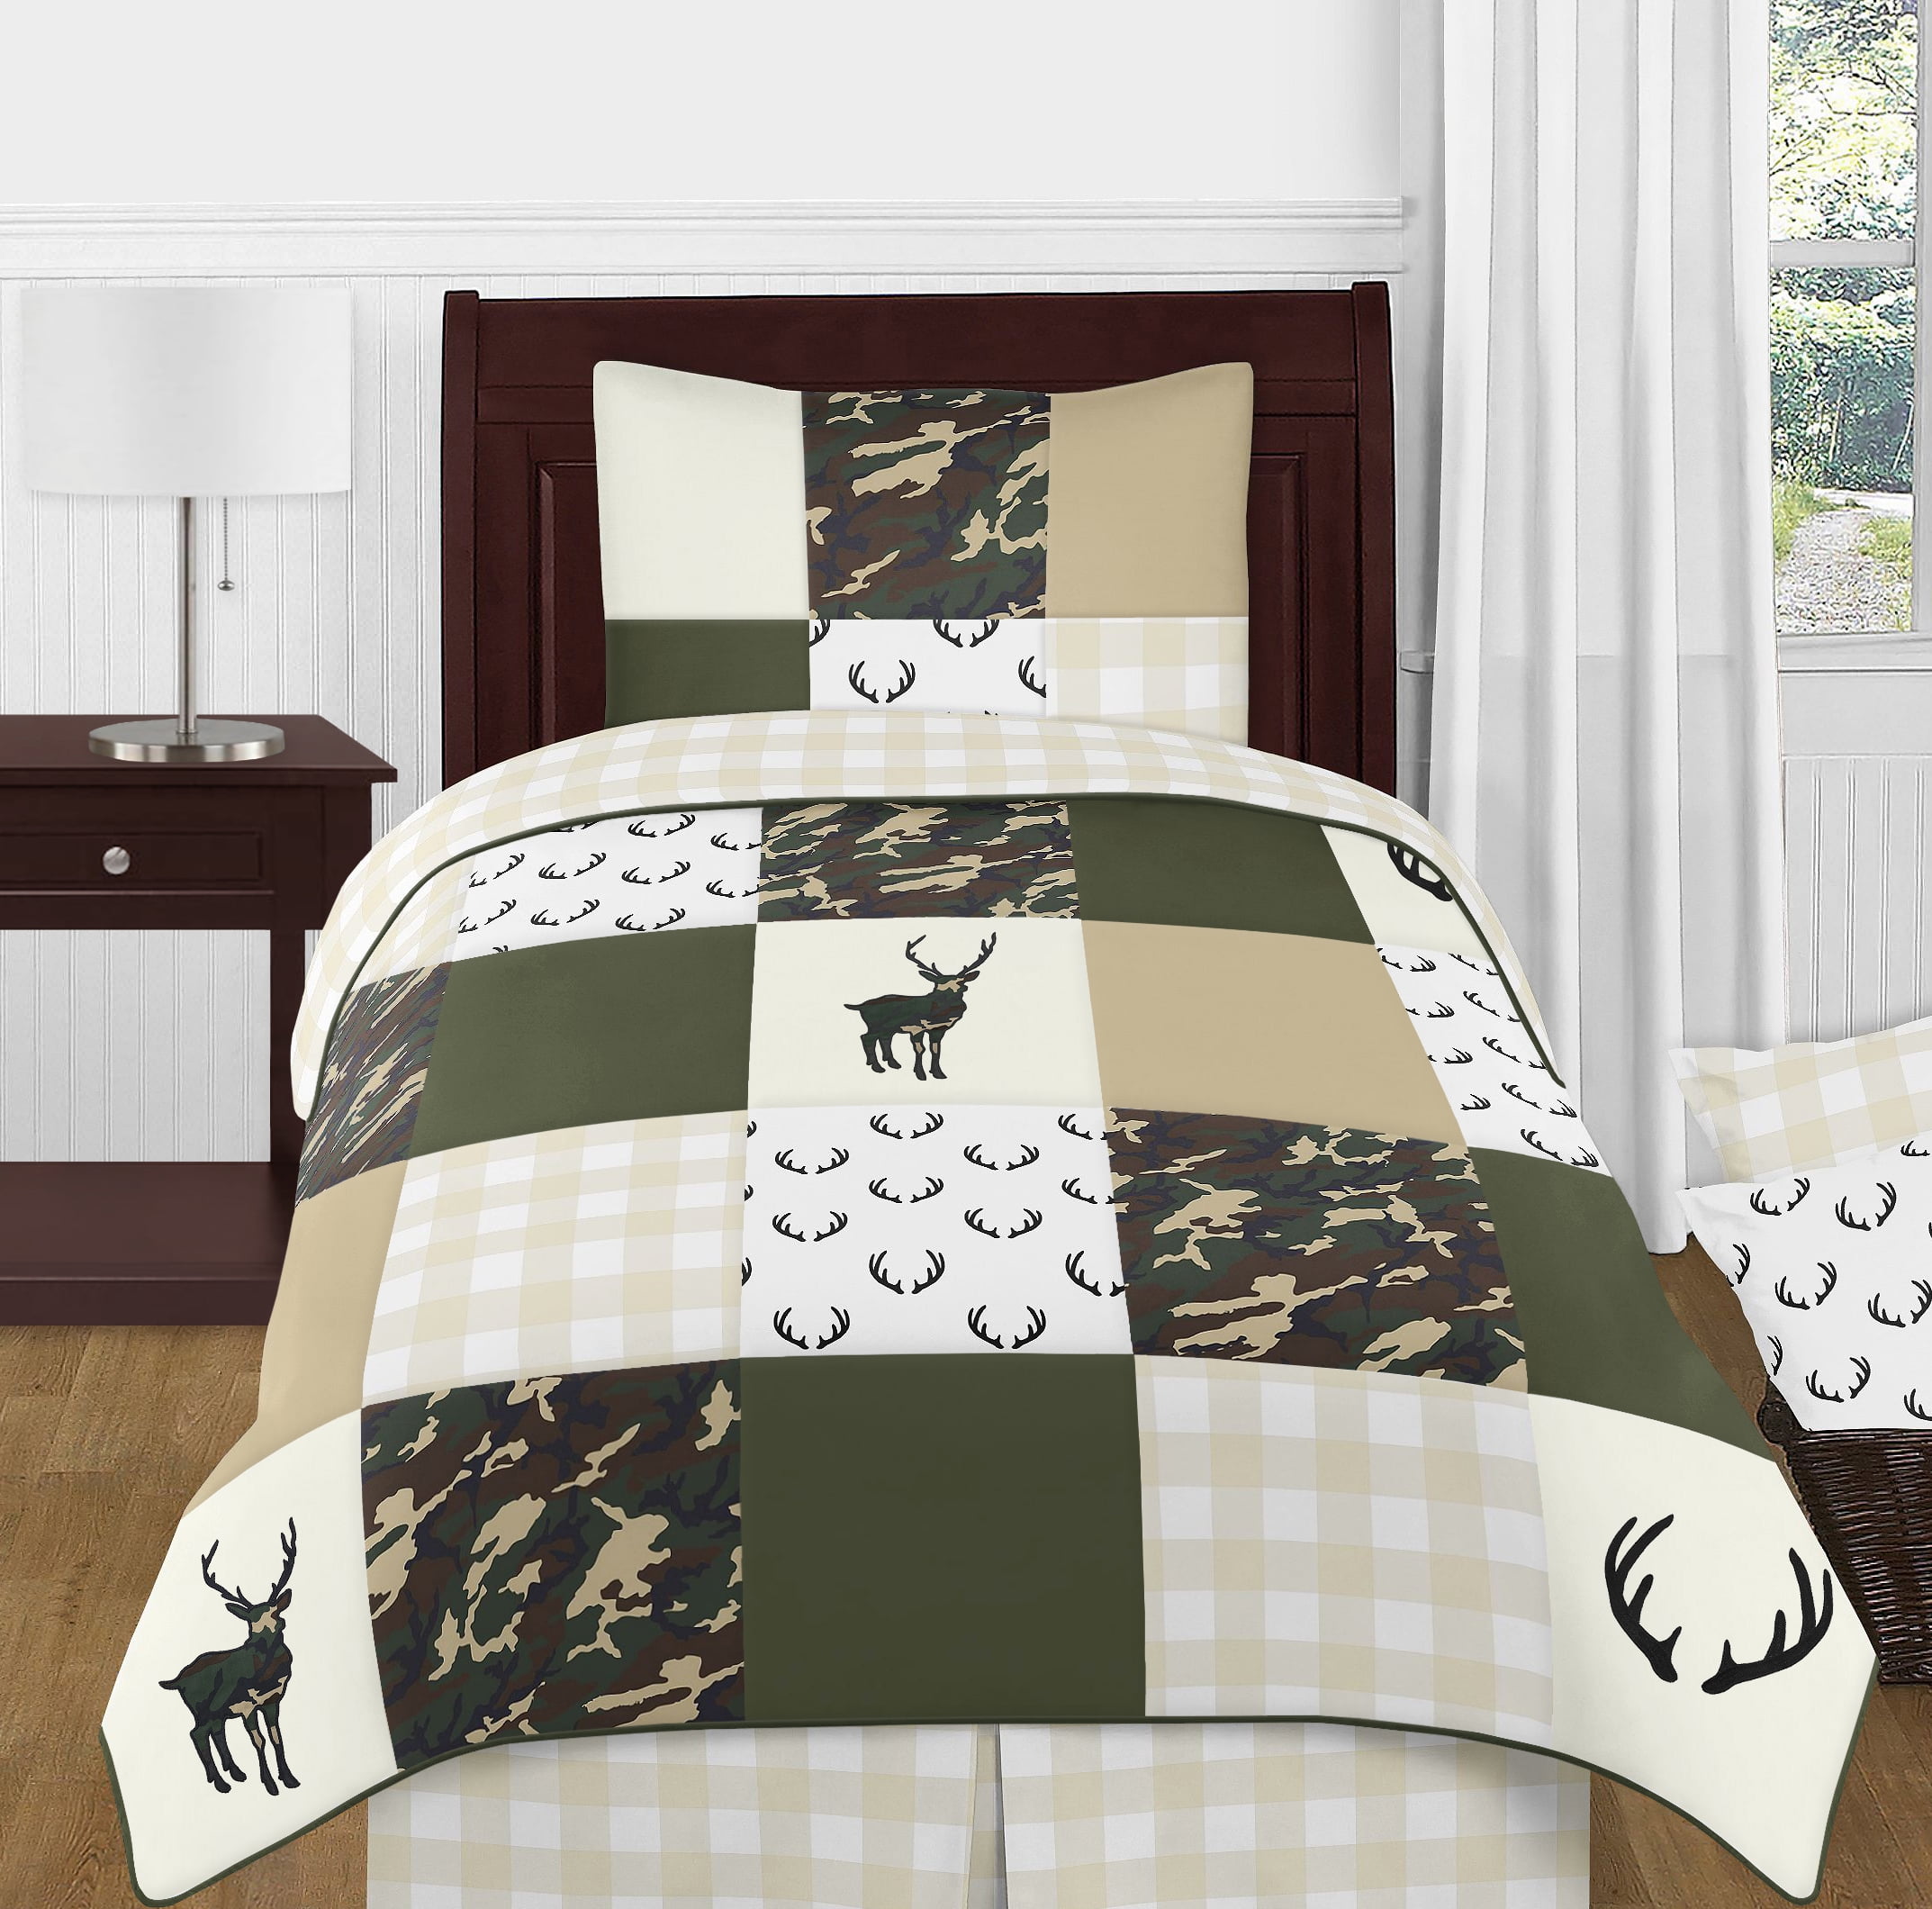 BED IN A BAG SHEET SET WOODS HUNT WOODLAND BROWN CAMO 7pc Queen COMFORTER SET 